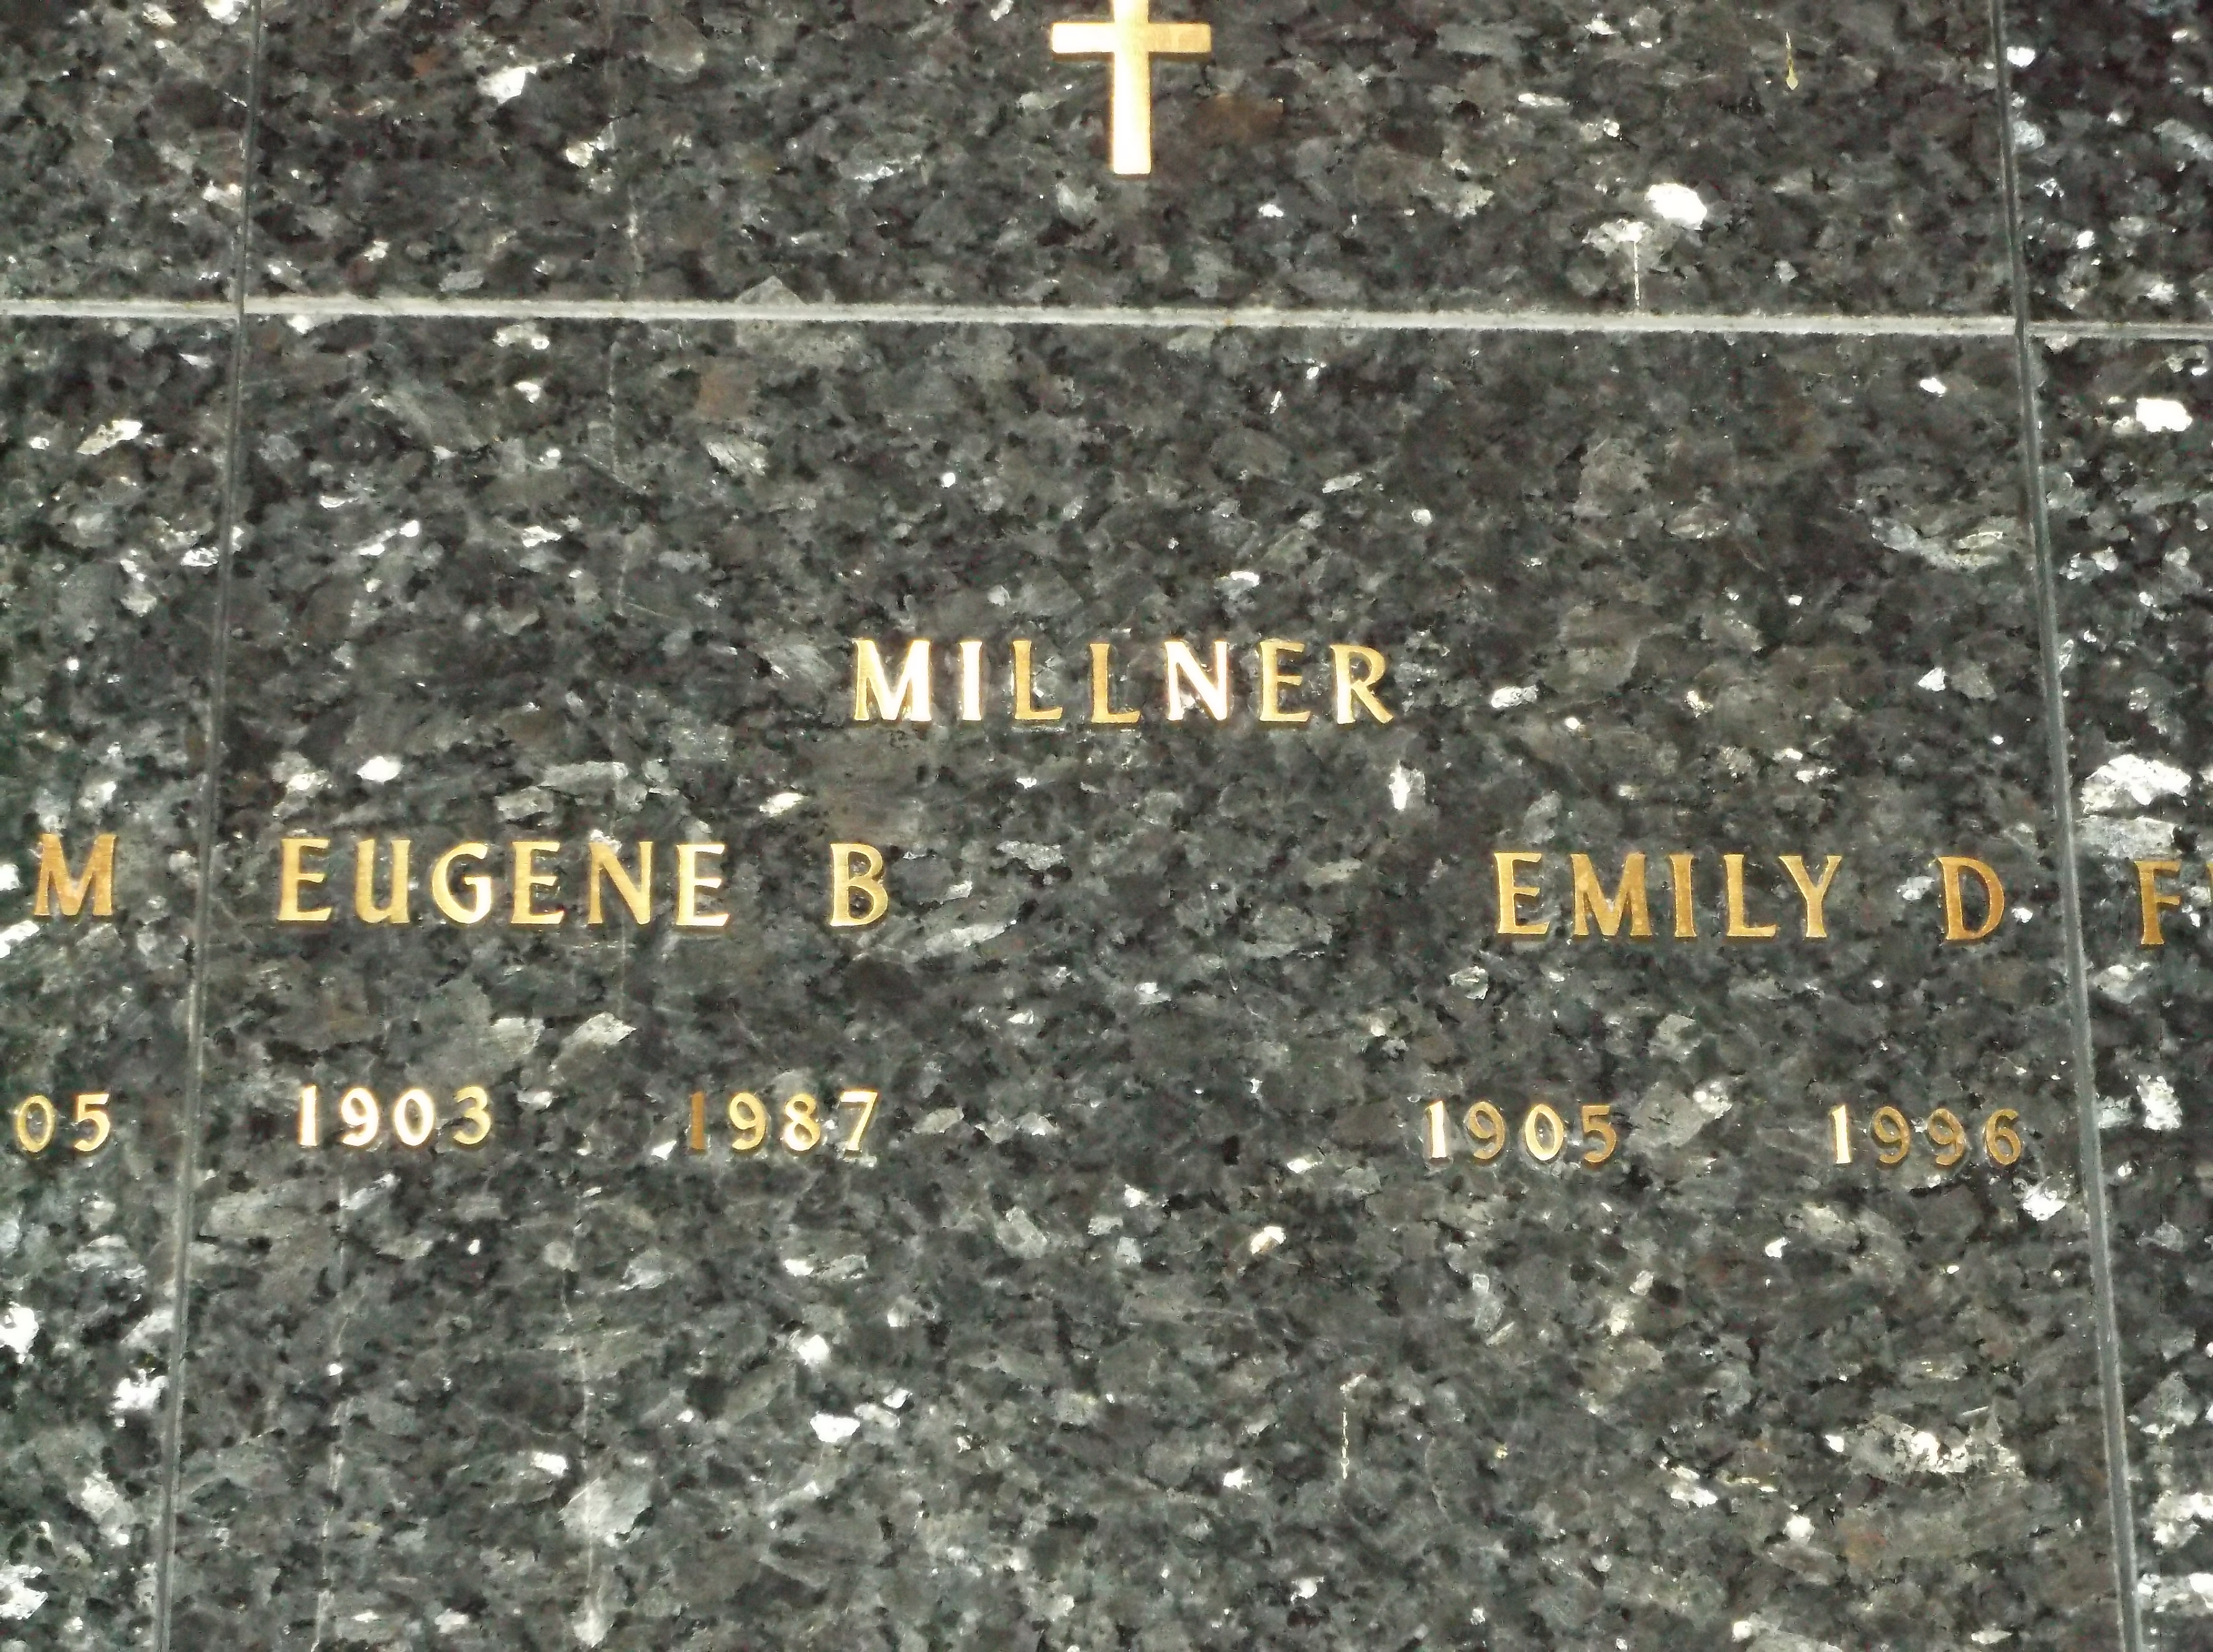 Eugene B Millner